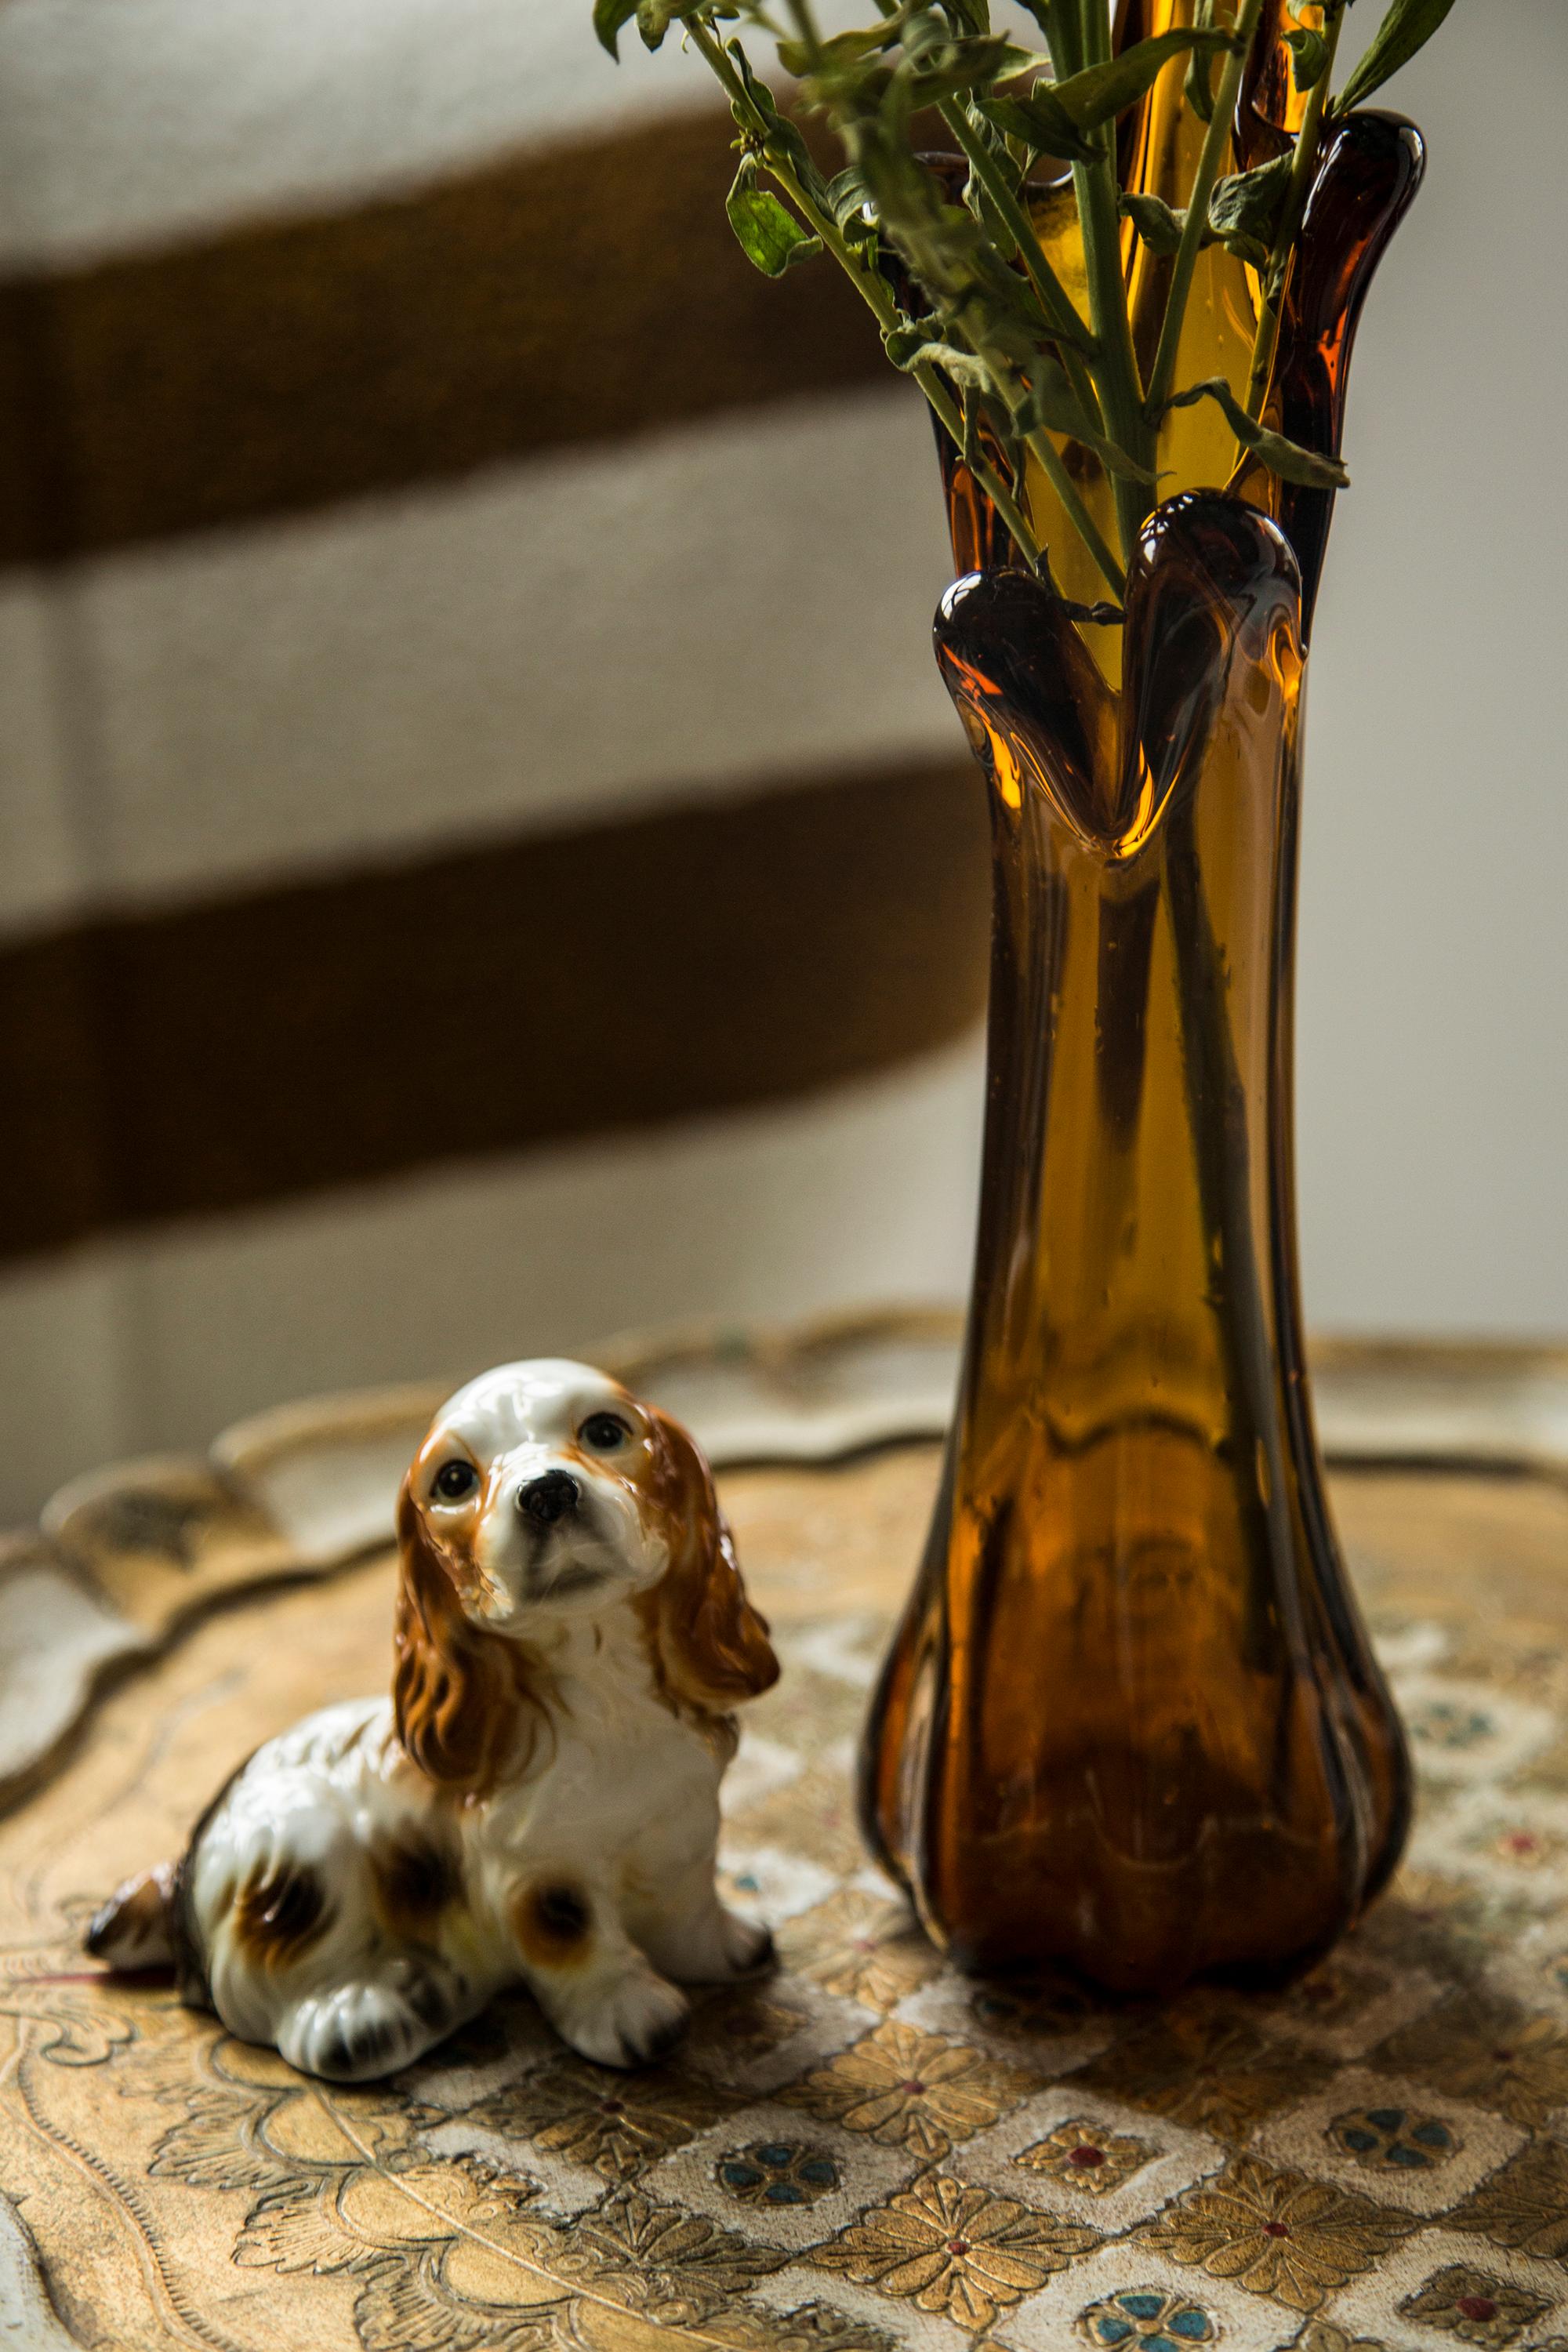 Bemalte Keramik, sehr guter originaler Vintage-Zustand. Keine Schäden oder Risse. Schöne und einzigartige dekorative Skulptur. Die kleine Hundeskulptur wurde in Taiwan hergestellt. Nur ein Hund verfügbar.